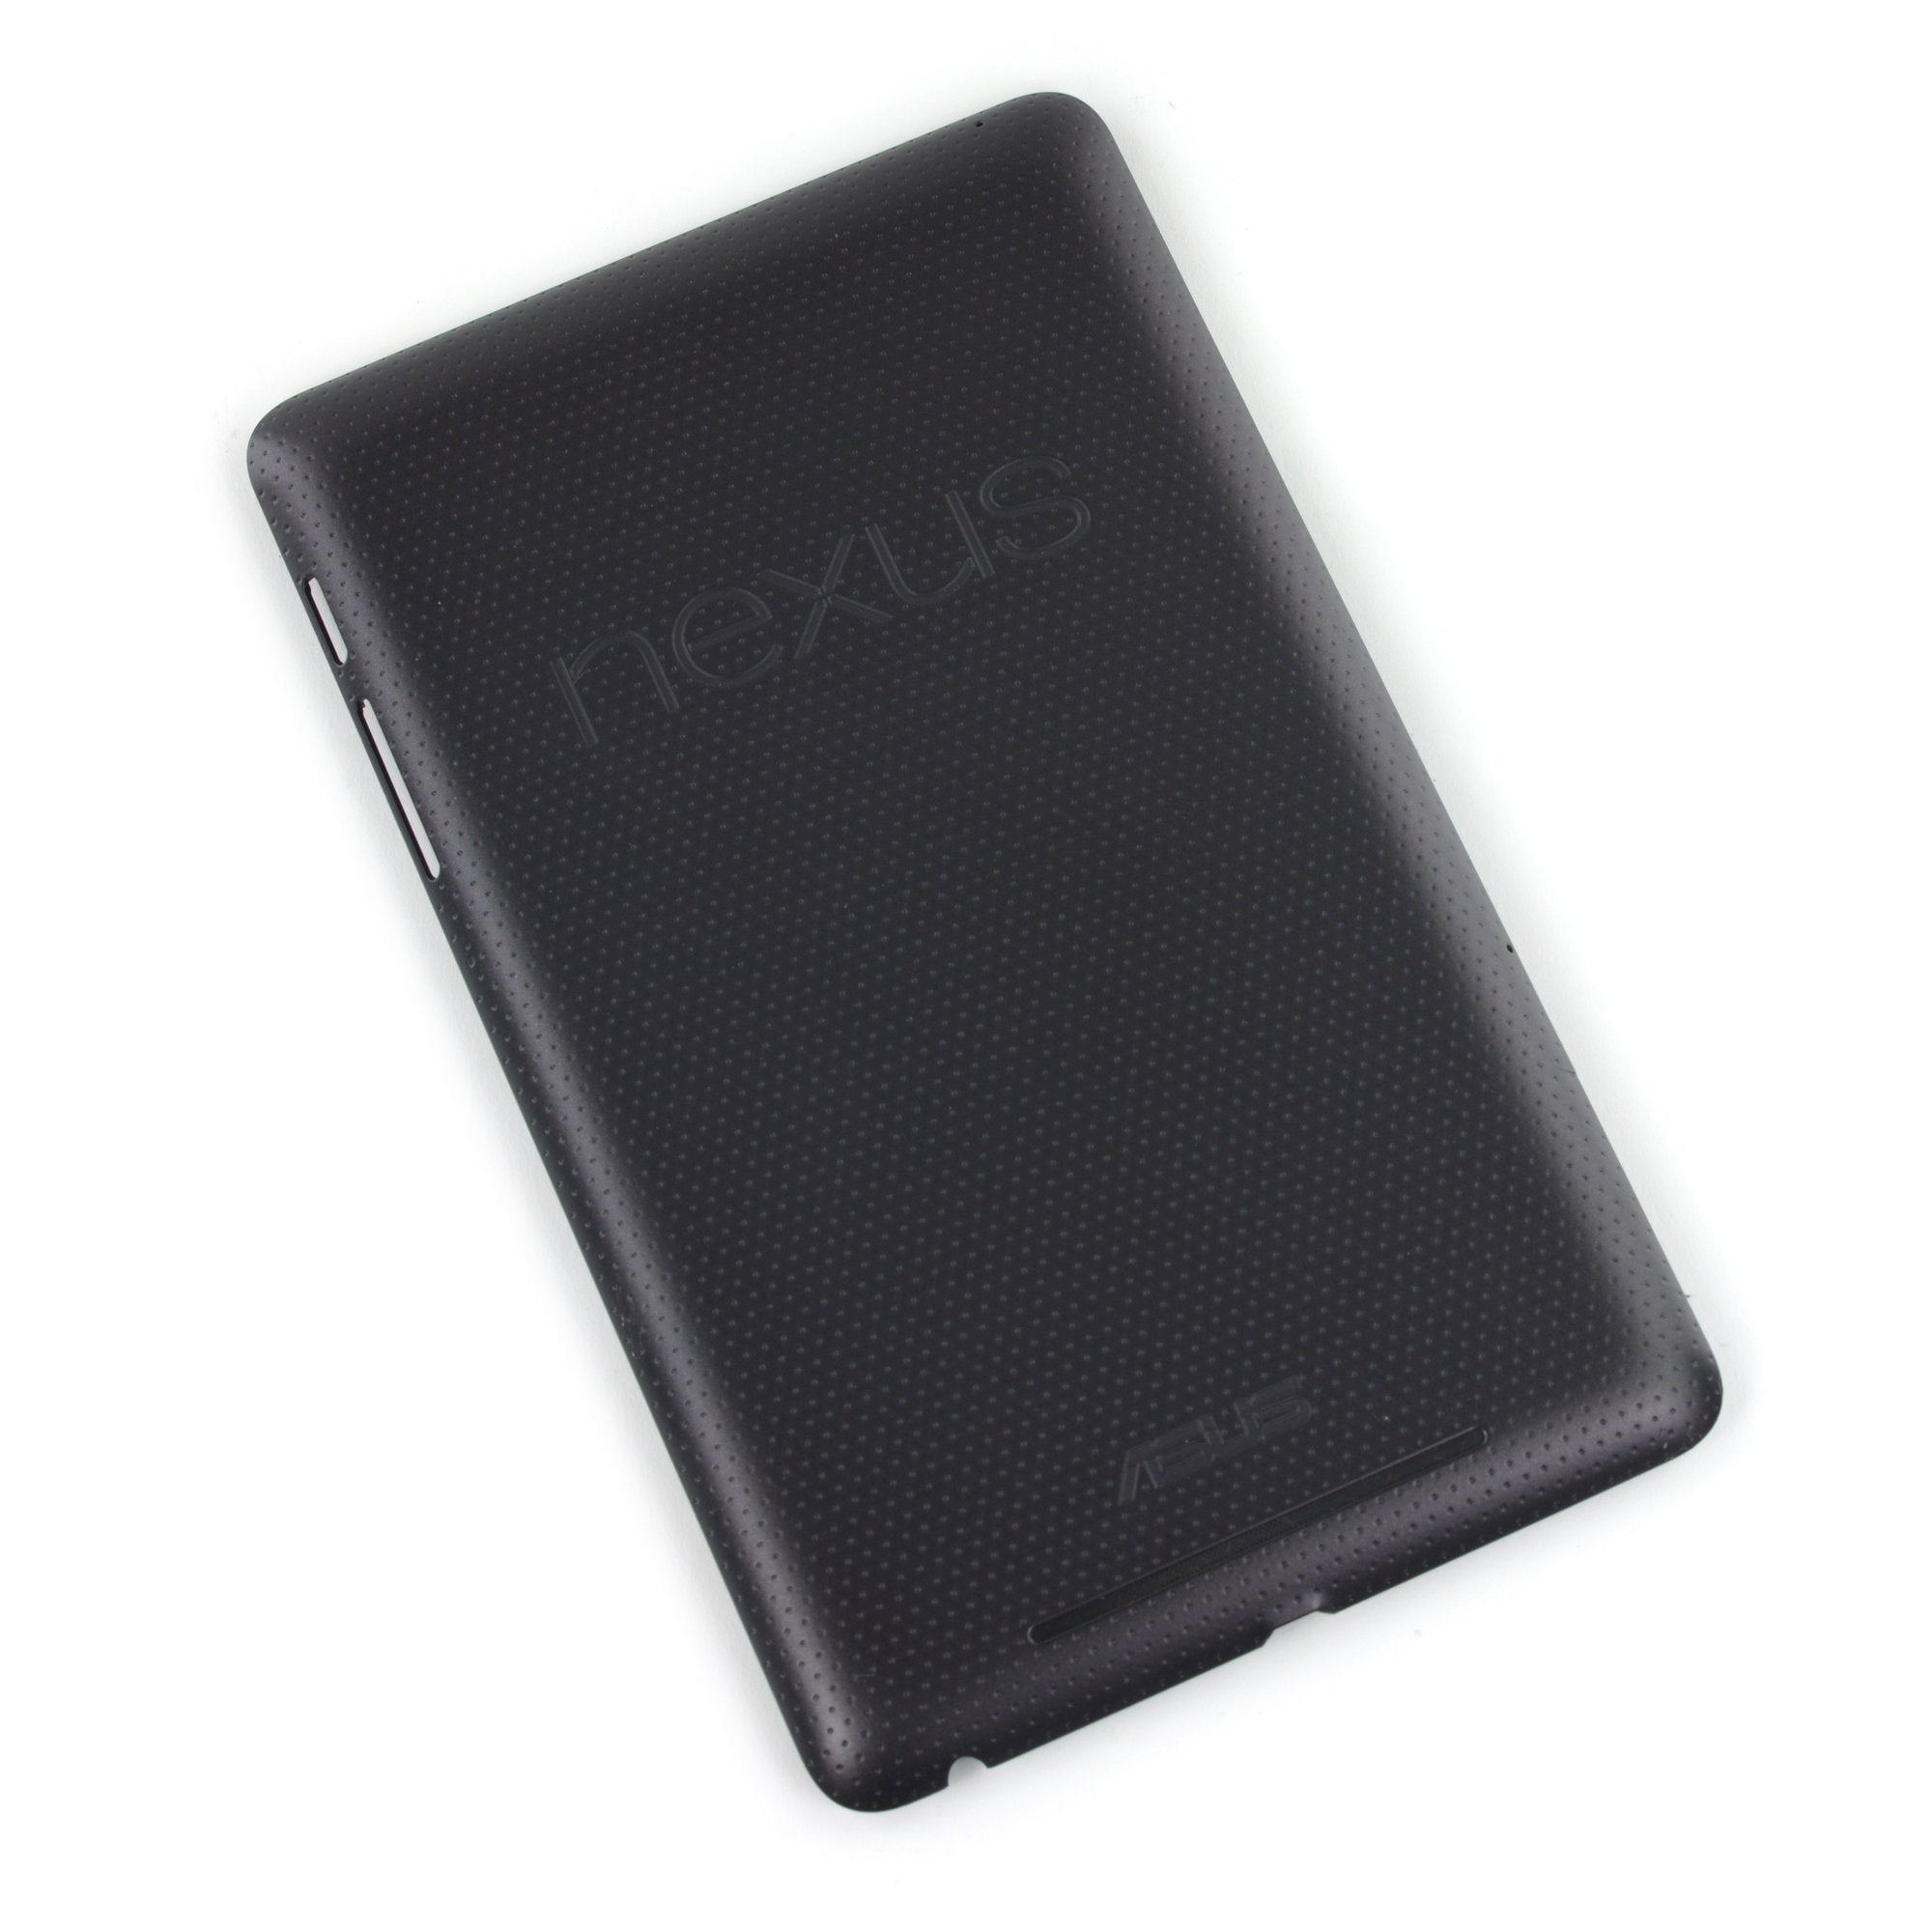 Nexus 7 (1st Gen) Rear Panel